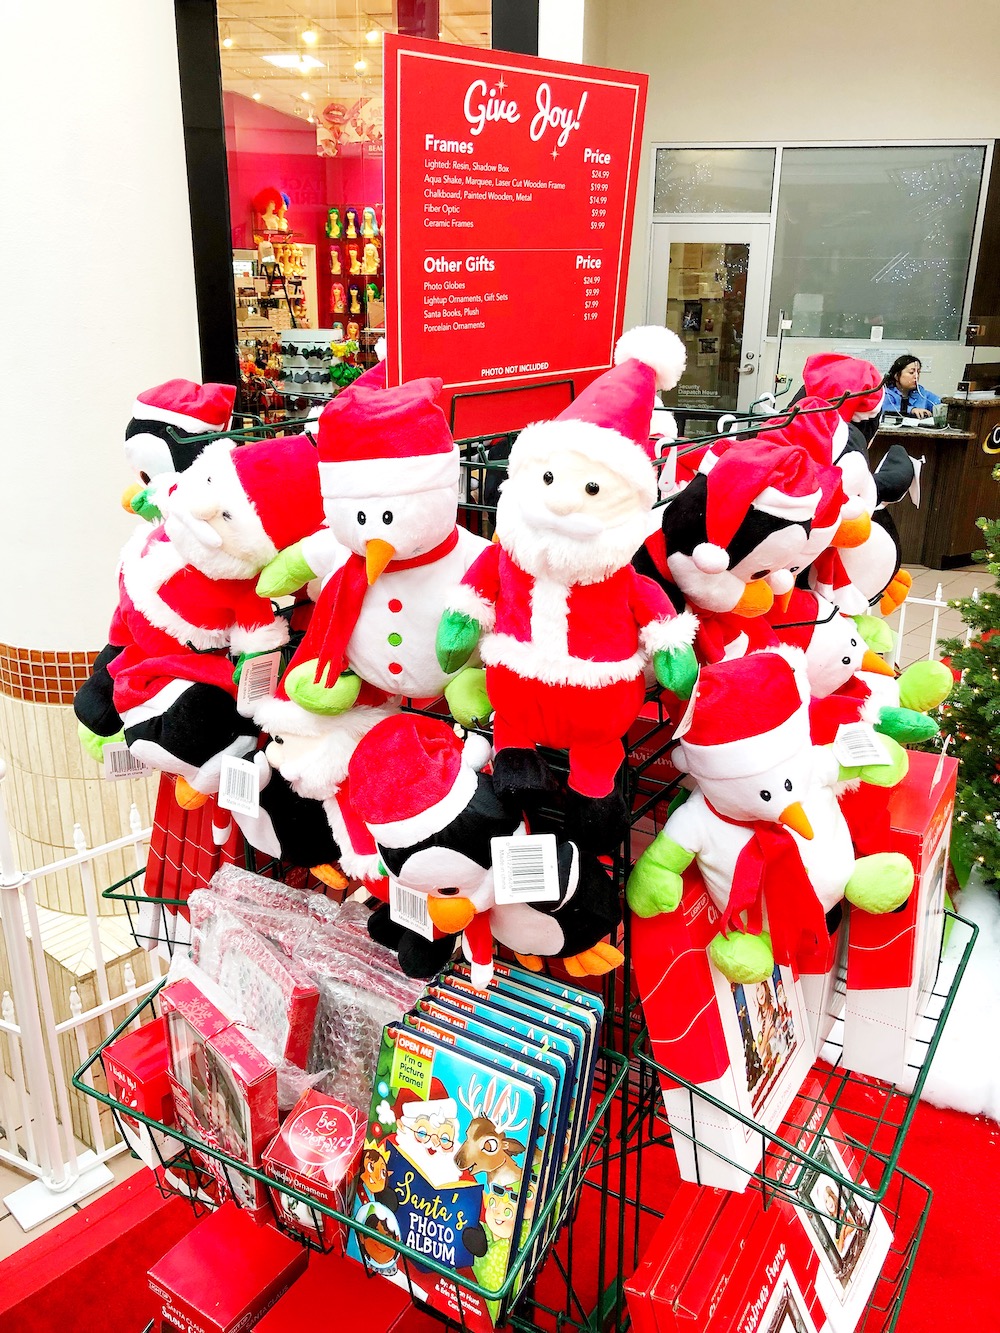 Holiday shopping and visiting Santa at MainPlace Mall in Santa Ana | LivingMiVidaLoca.com | #LivingMiVidaLoca #SantaAna #ShopMainPlace #ShopMainPlaceMall #MainPlace #KidBlogger